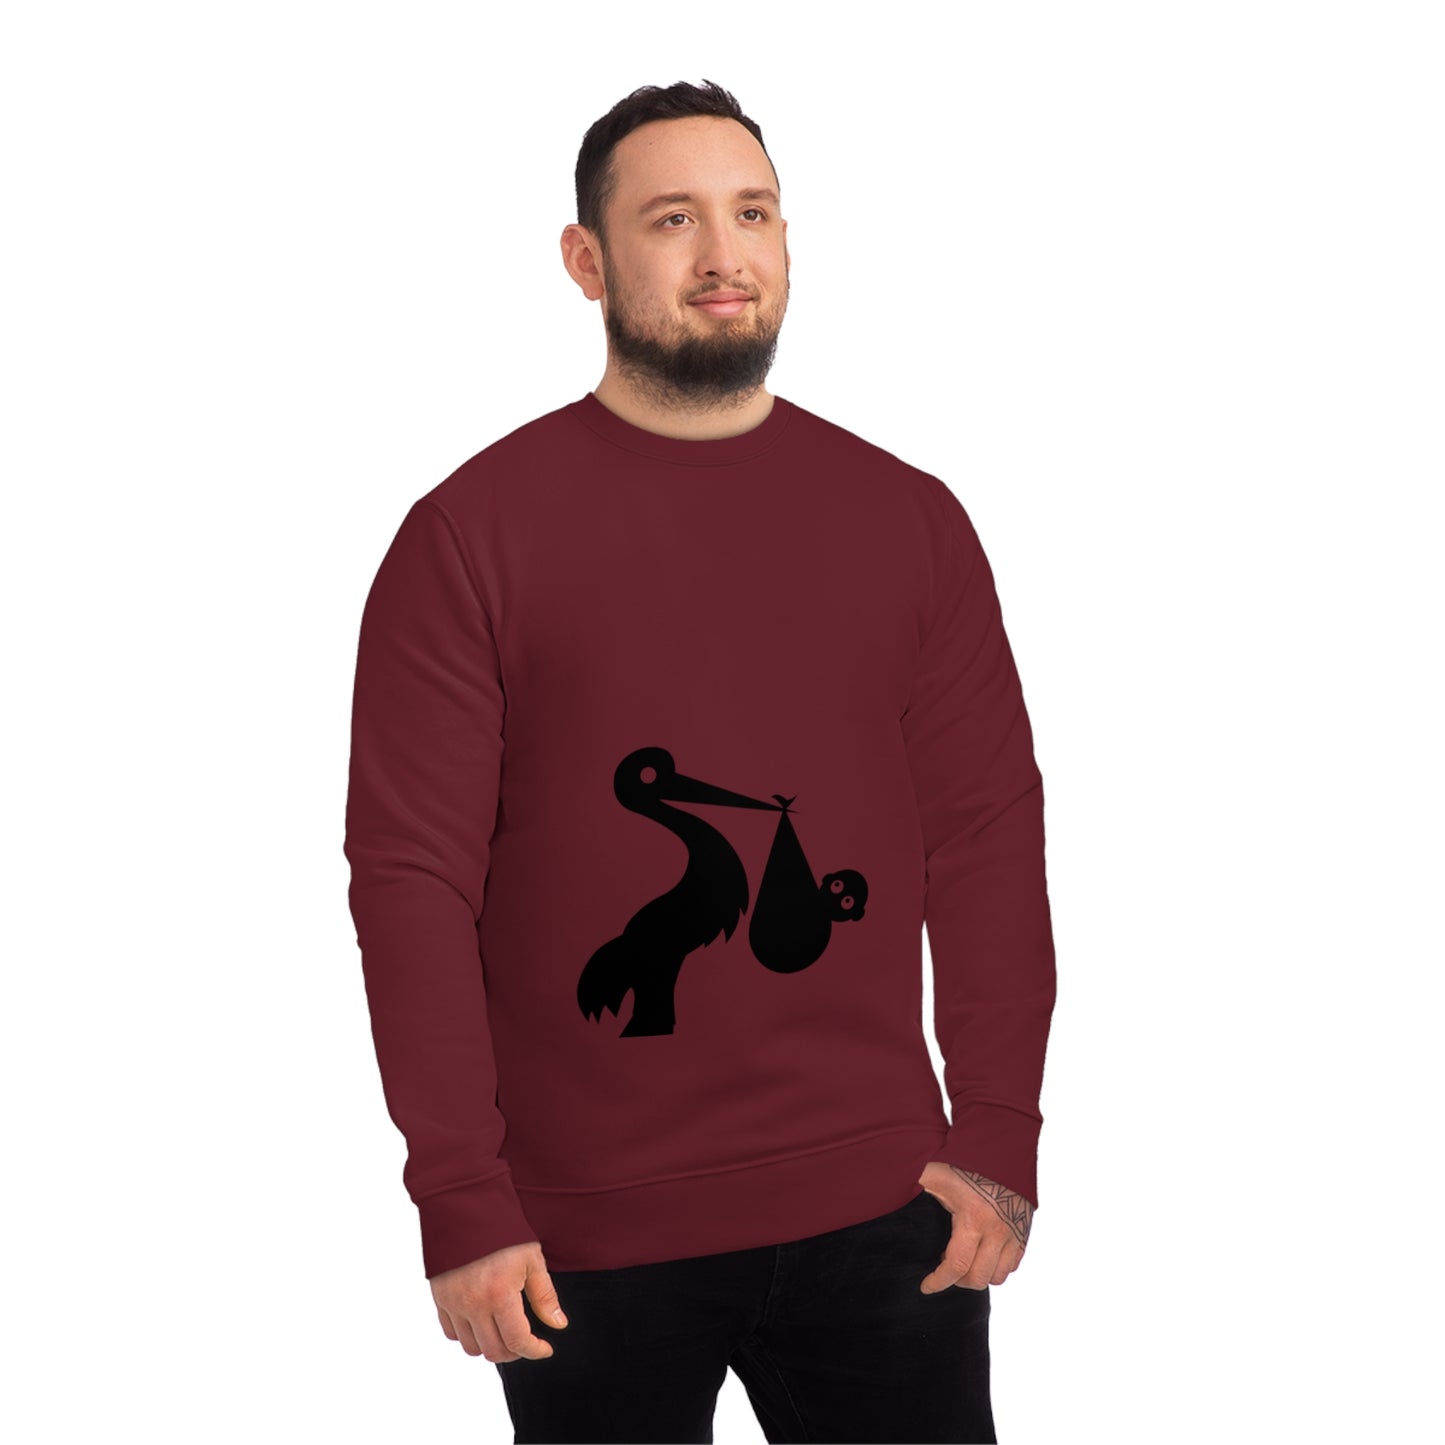 GRUMONH - Unisex Changer Sweatshirt